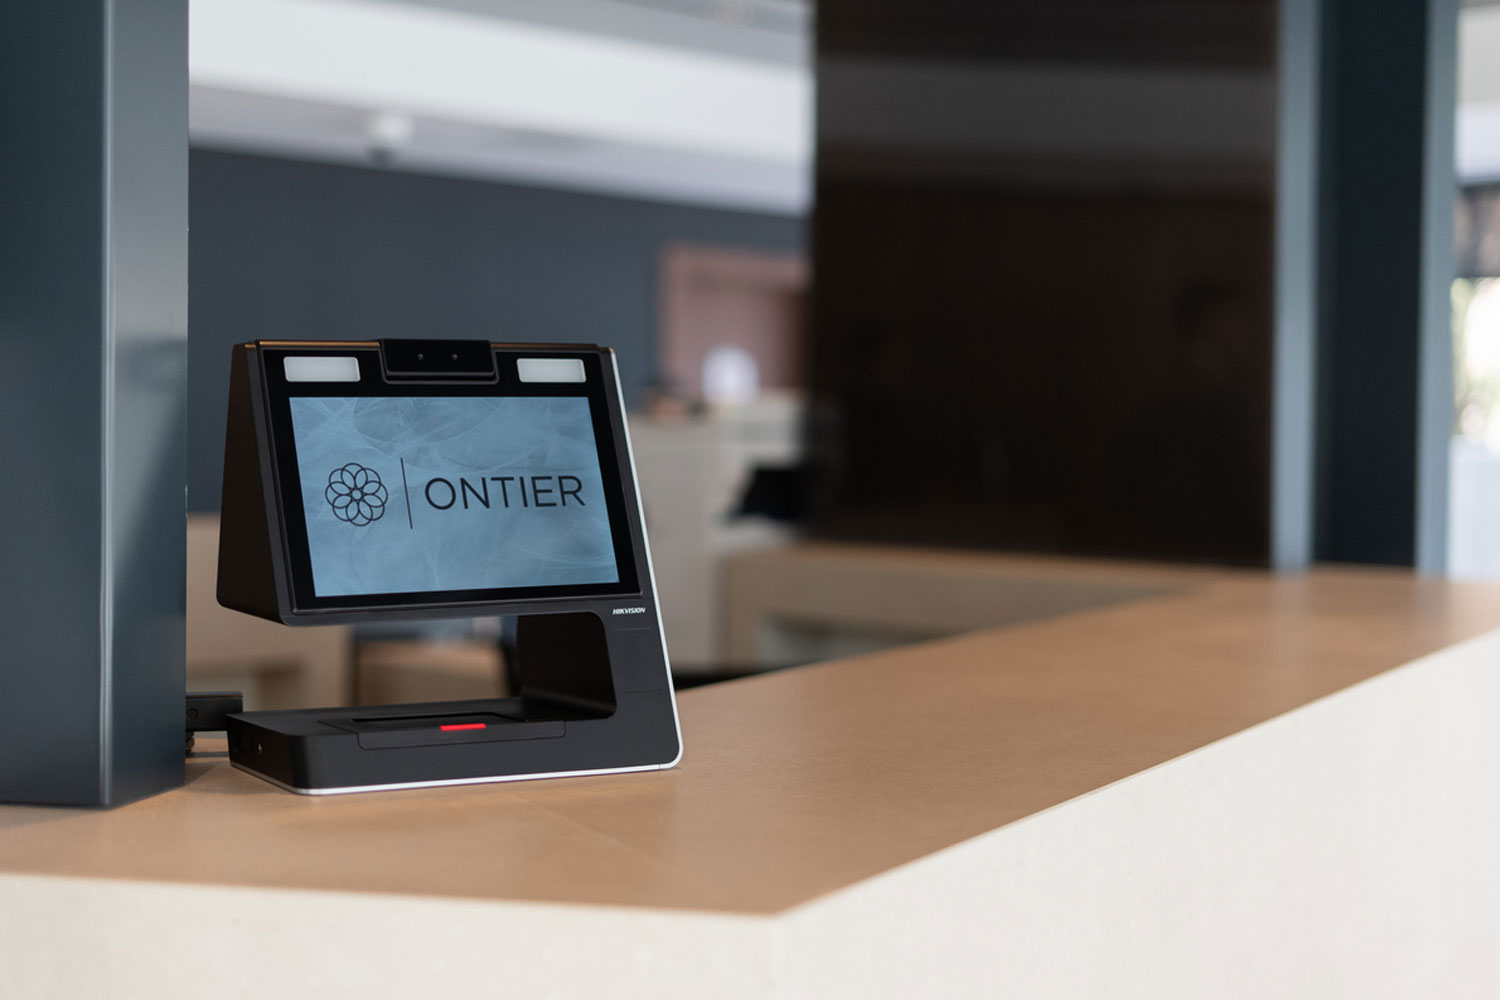 La firma de abogados Ontier equipa su sede corporativa con la última tecnología de Hikvision.